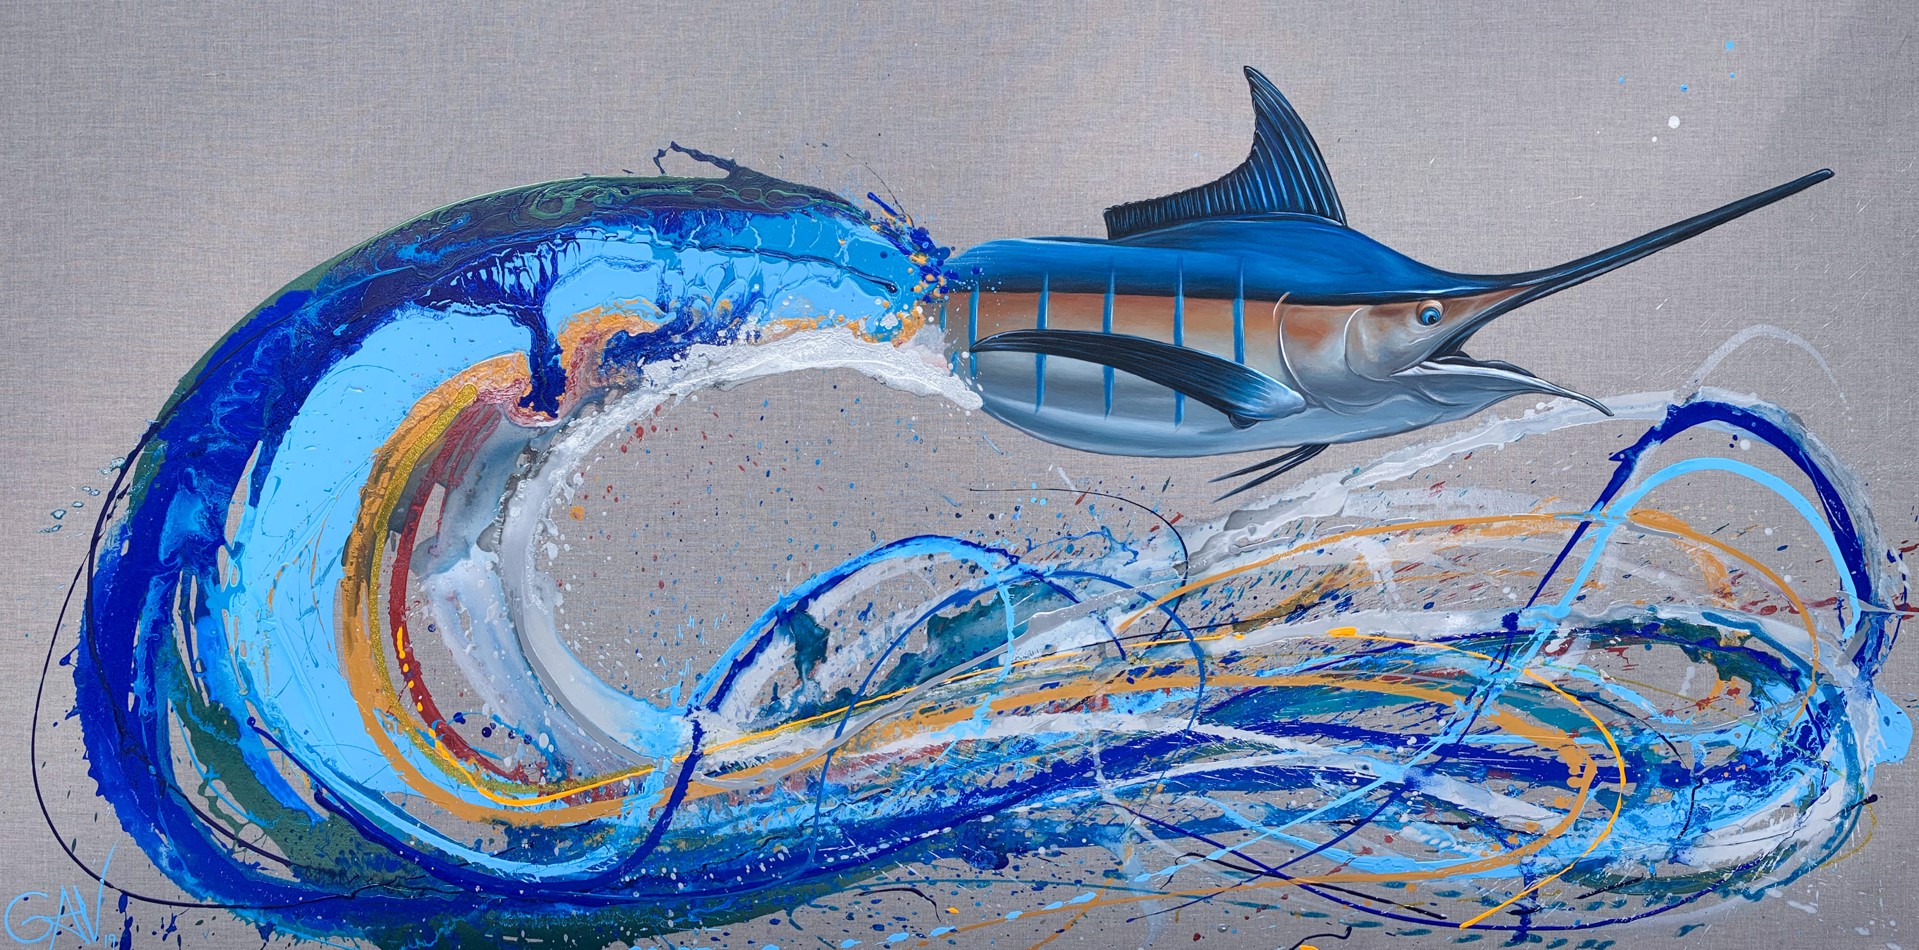 Marlin by Gav Barbey